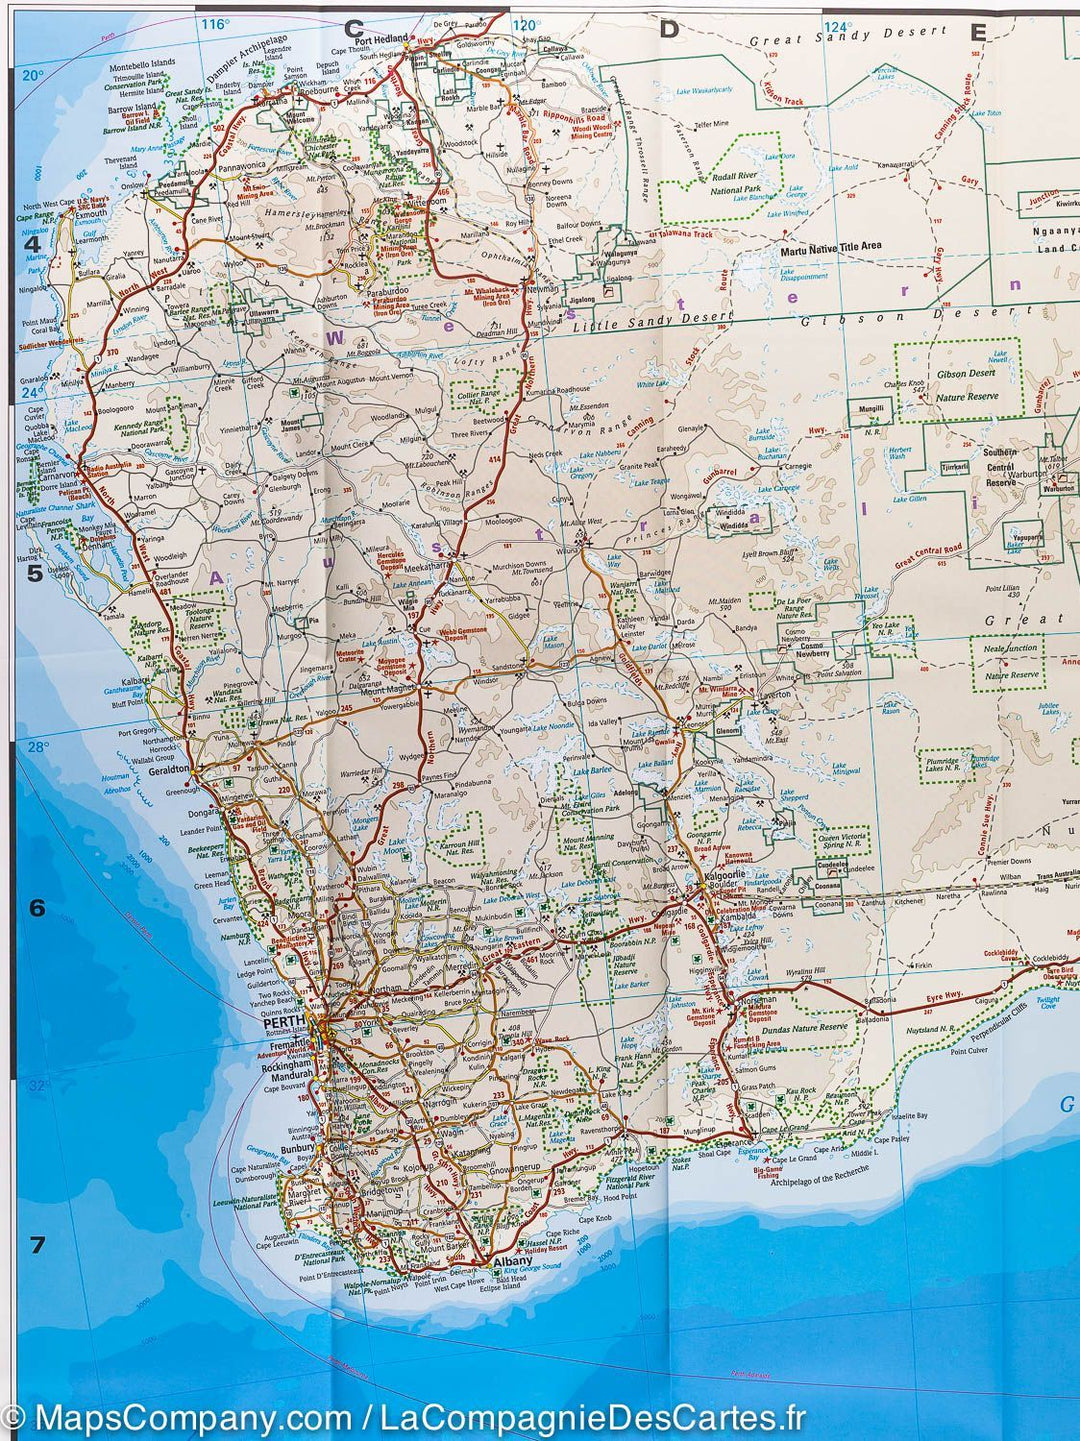 Carte routière de l'Australie | Reise Know How - La Compagnie des Cartes